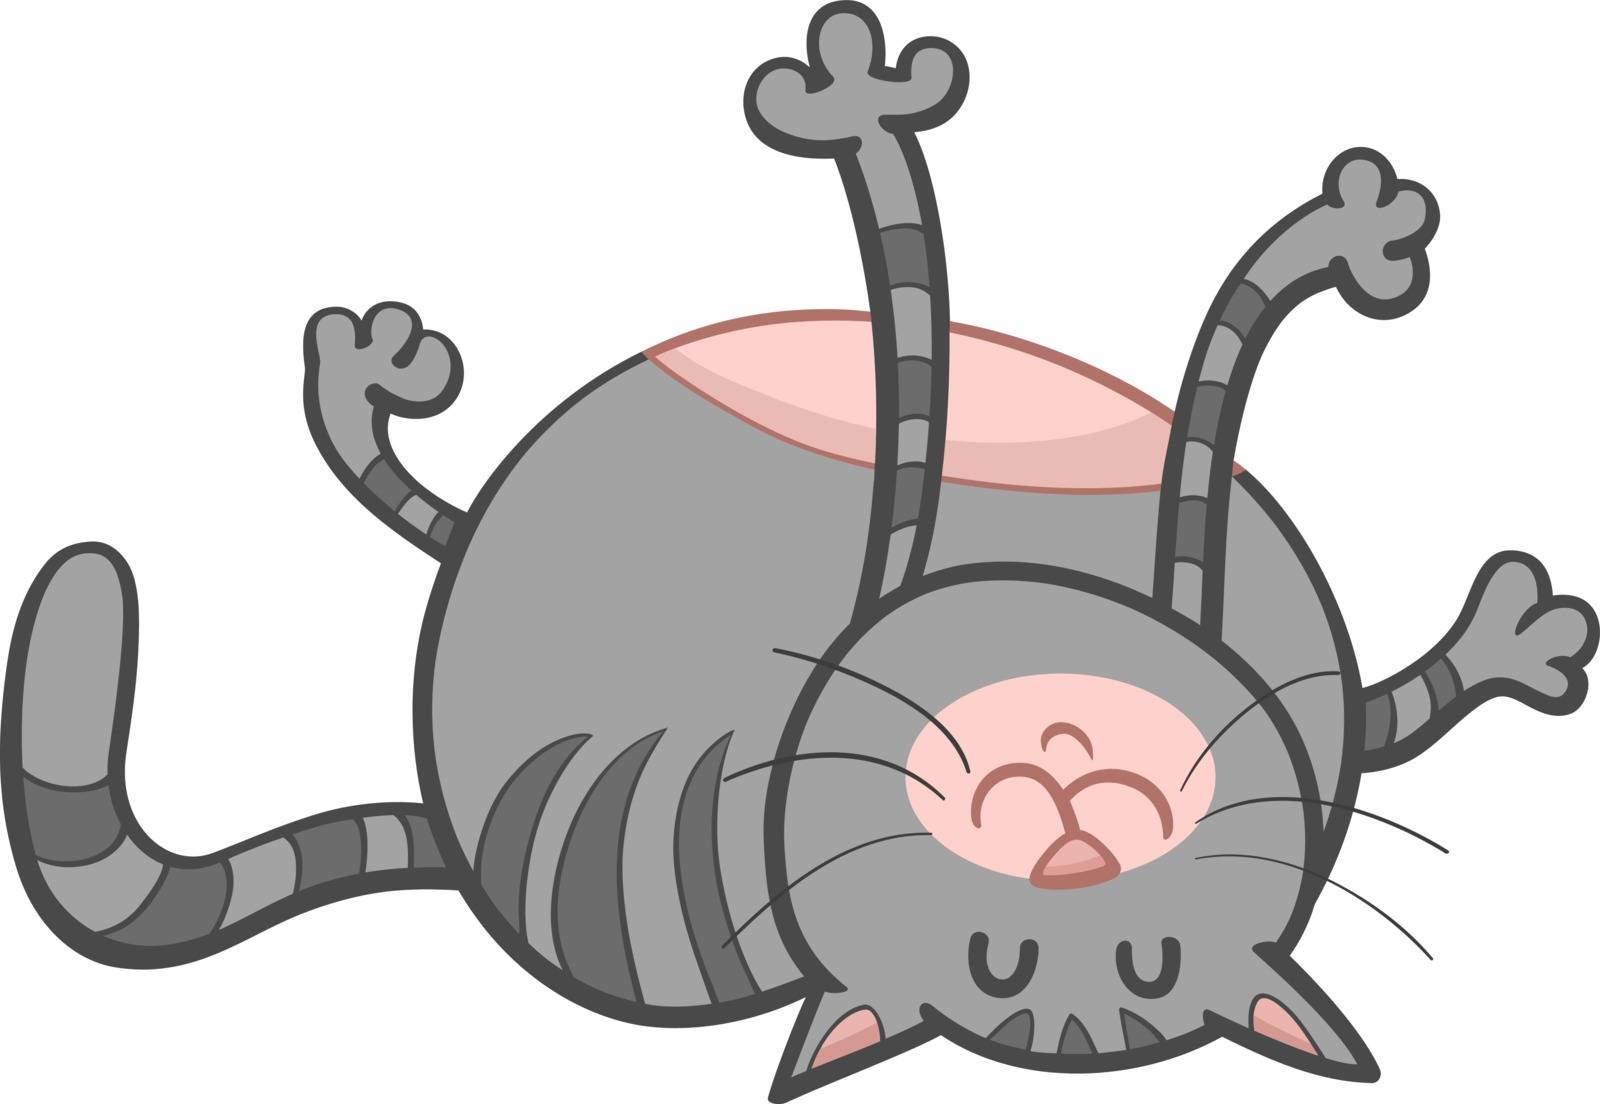 happy cat cartoon character by izakowski